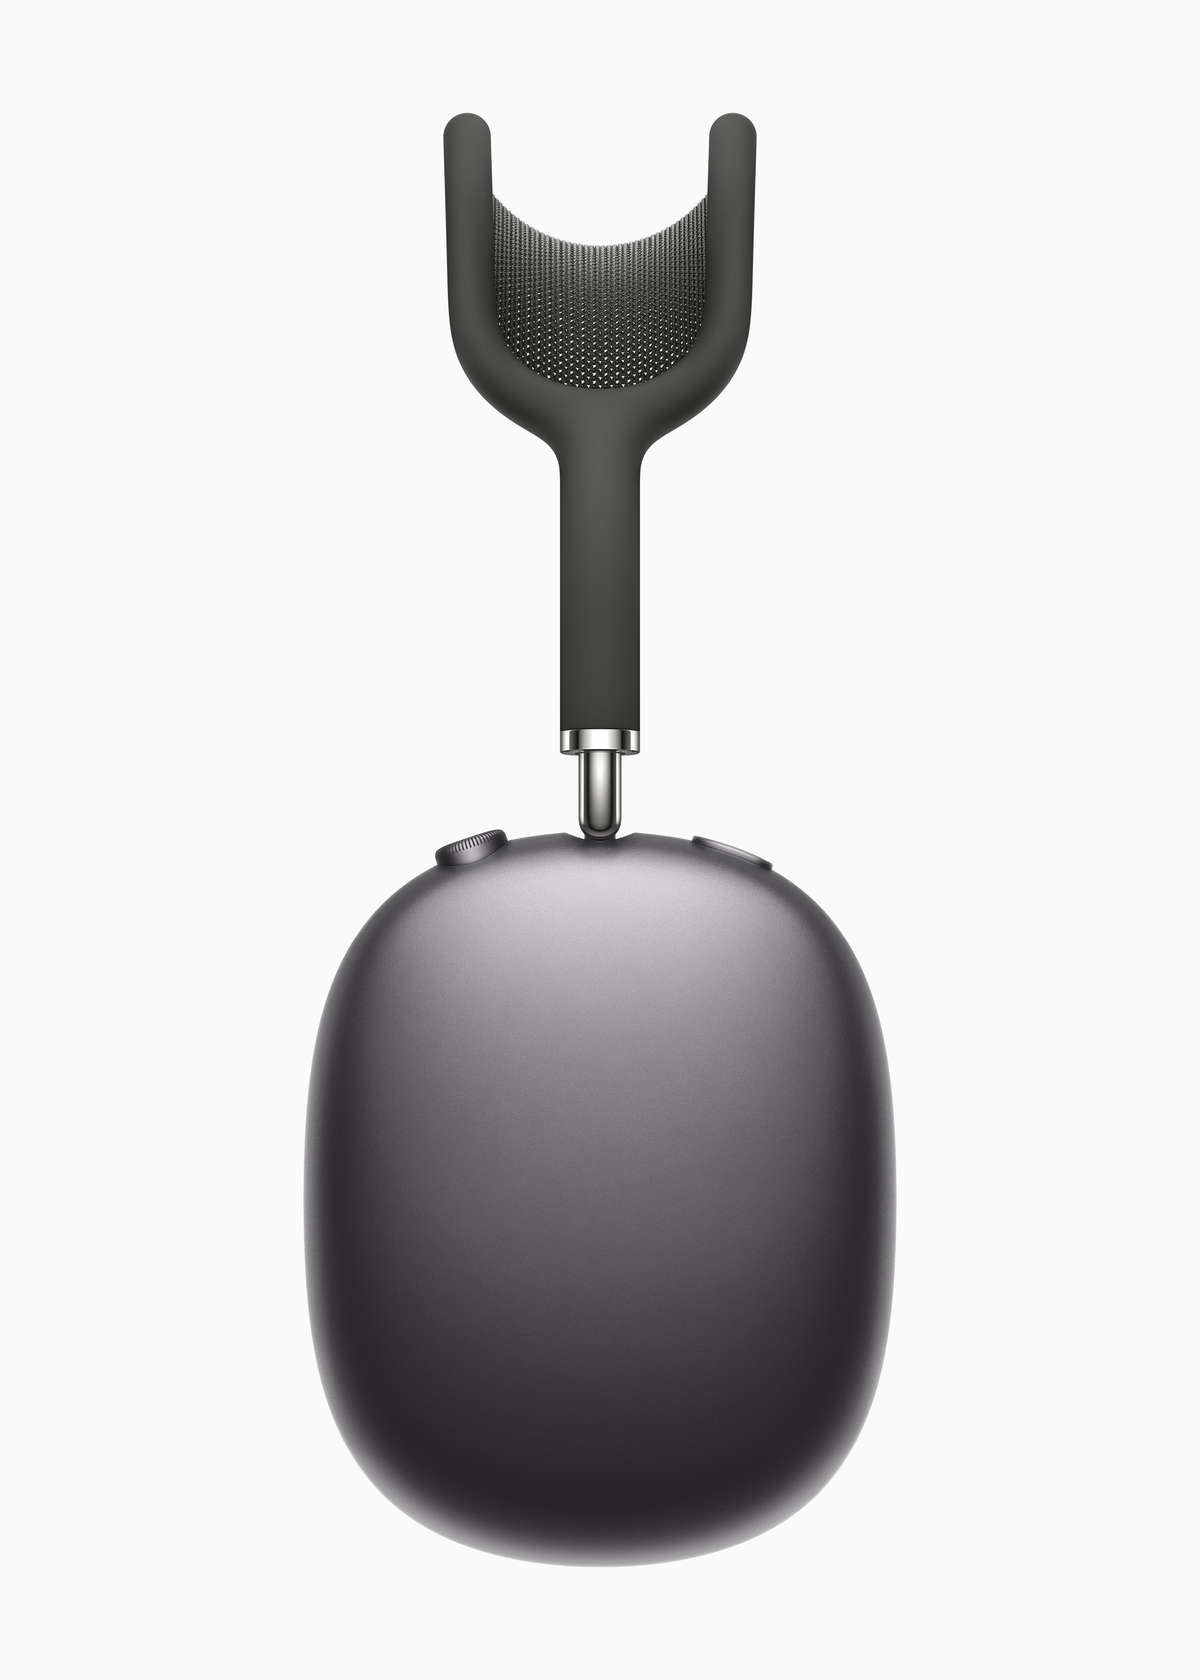 Apple AirPods Max kulak üstü ve gürültü engellemeli kulaklık tanıtıldı